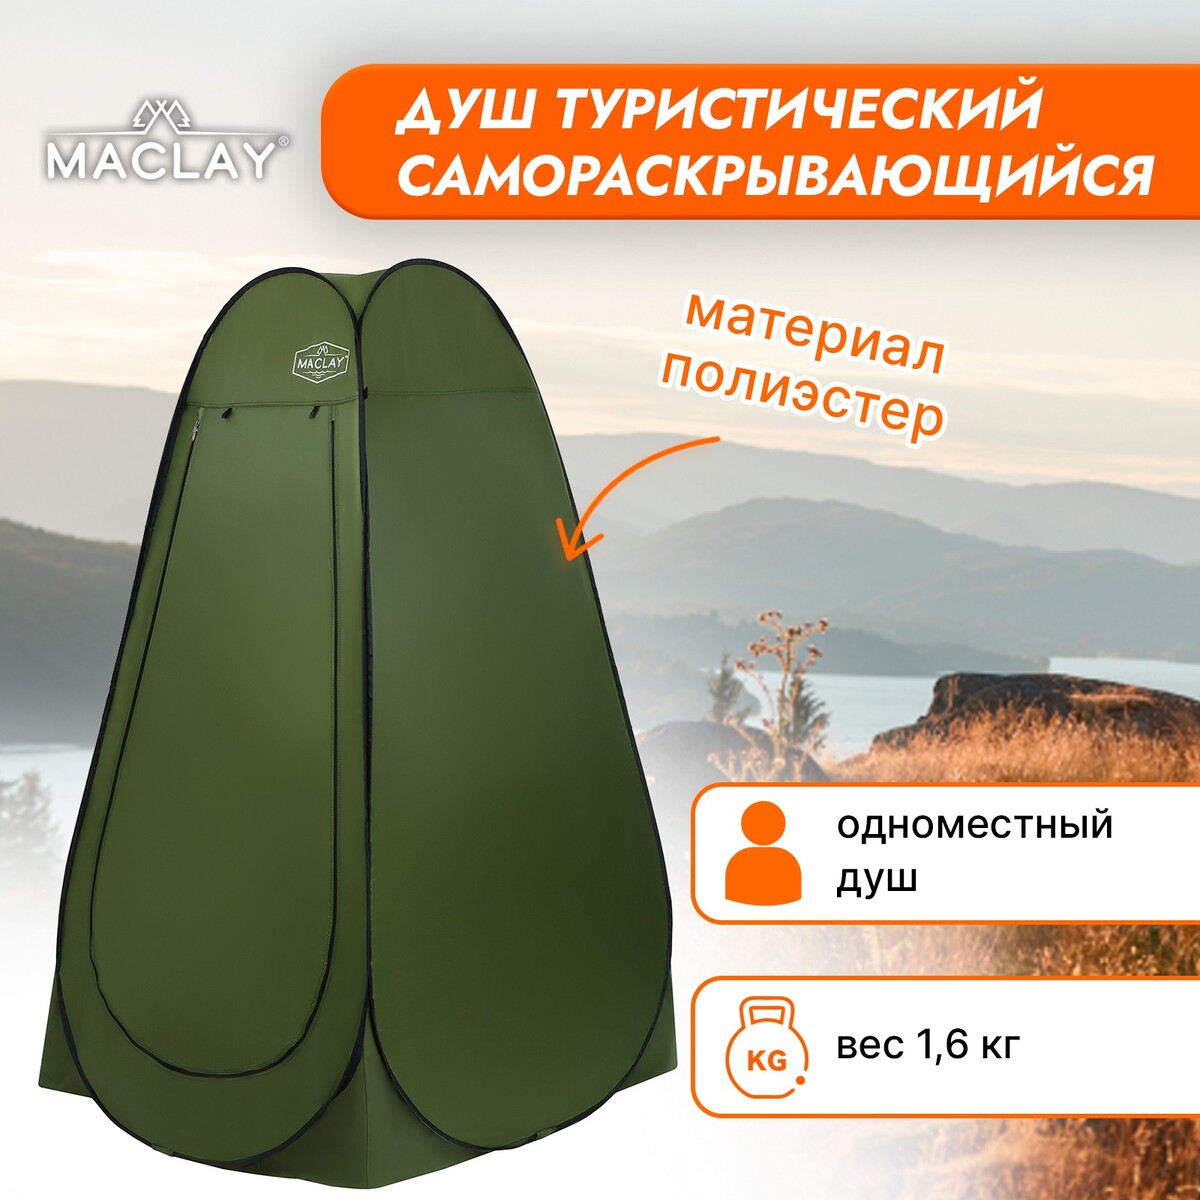 Палатка туристическая maclay, самораскрывающаяся, для душа, 120х120х195 см, цвет зеленый палатка туристическая аtemi kama 5c